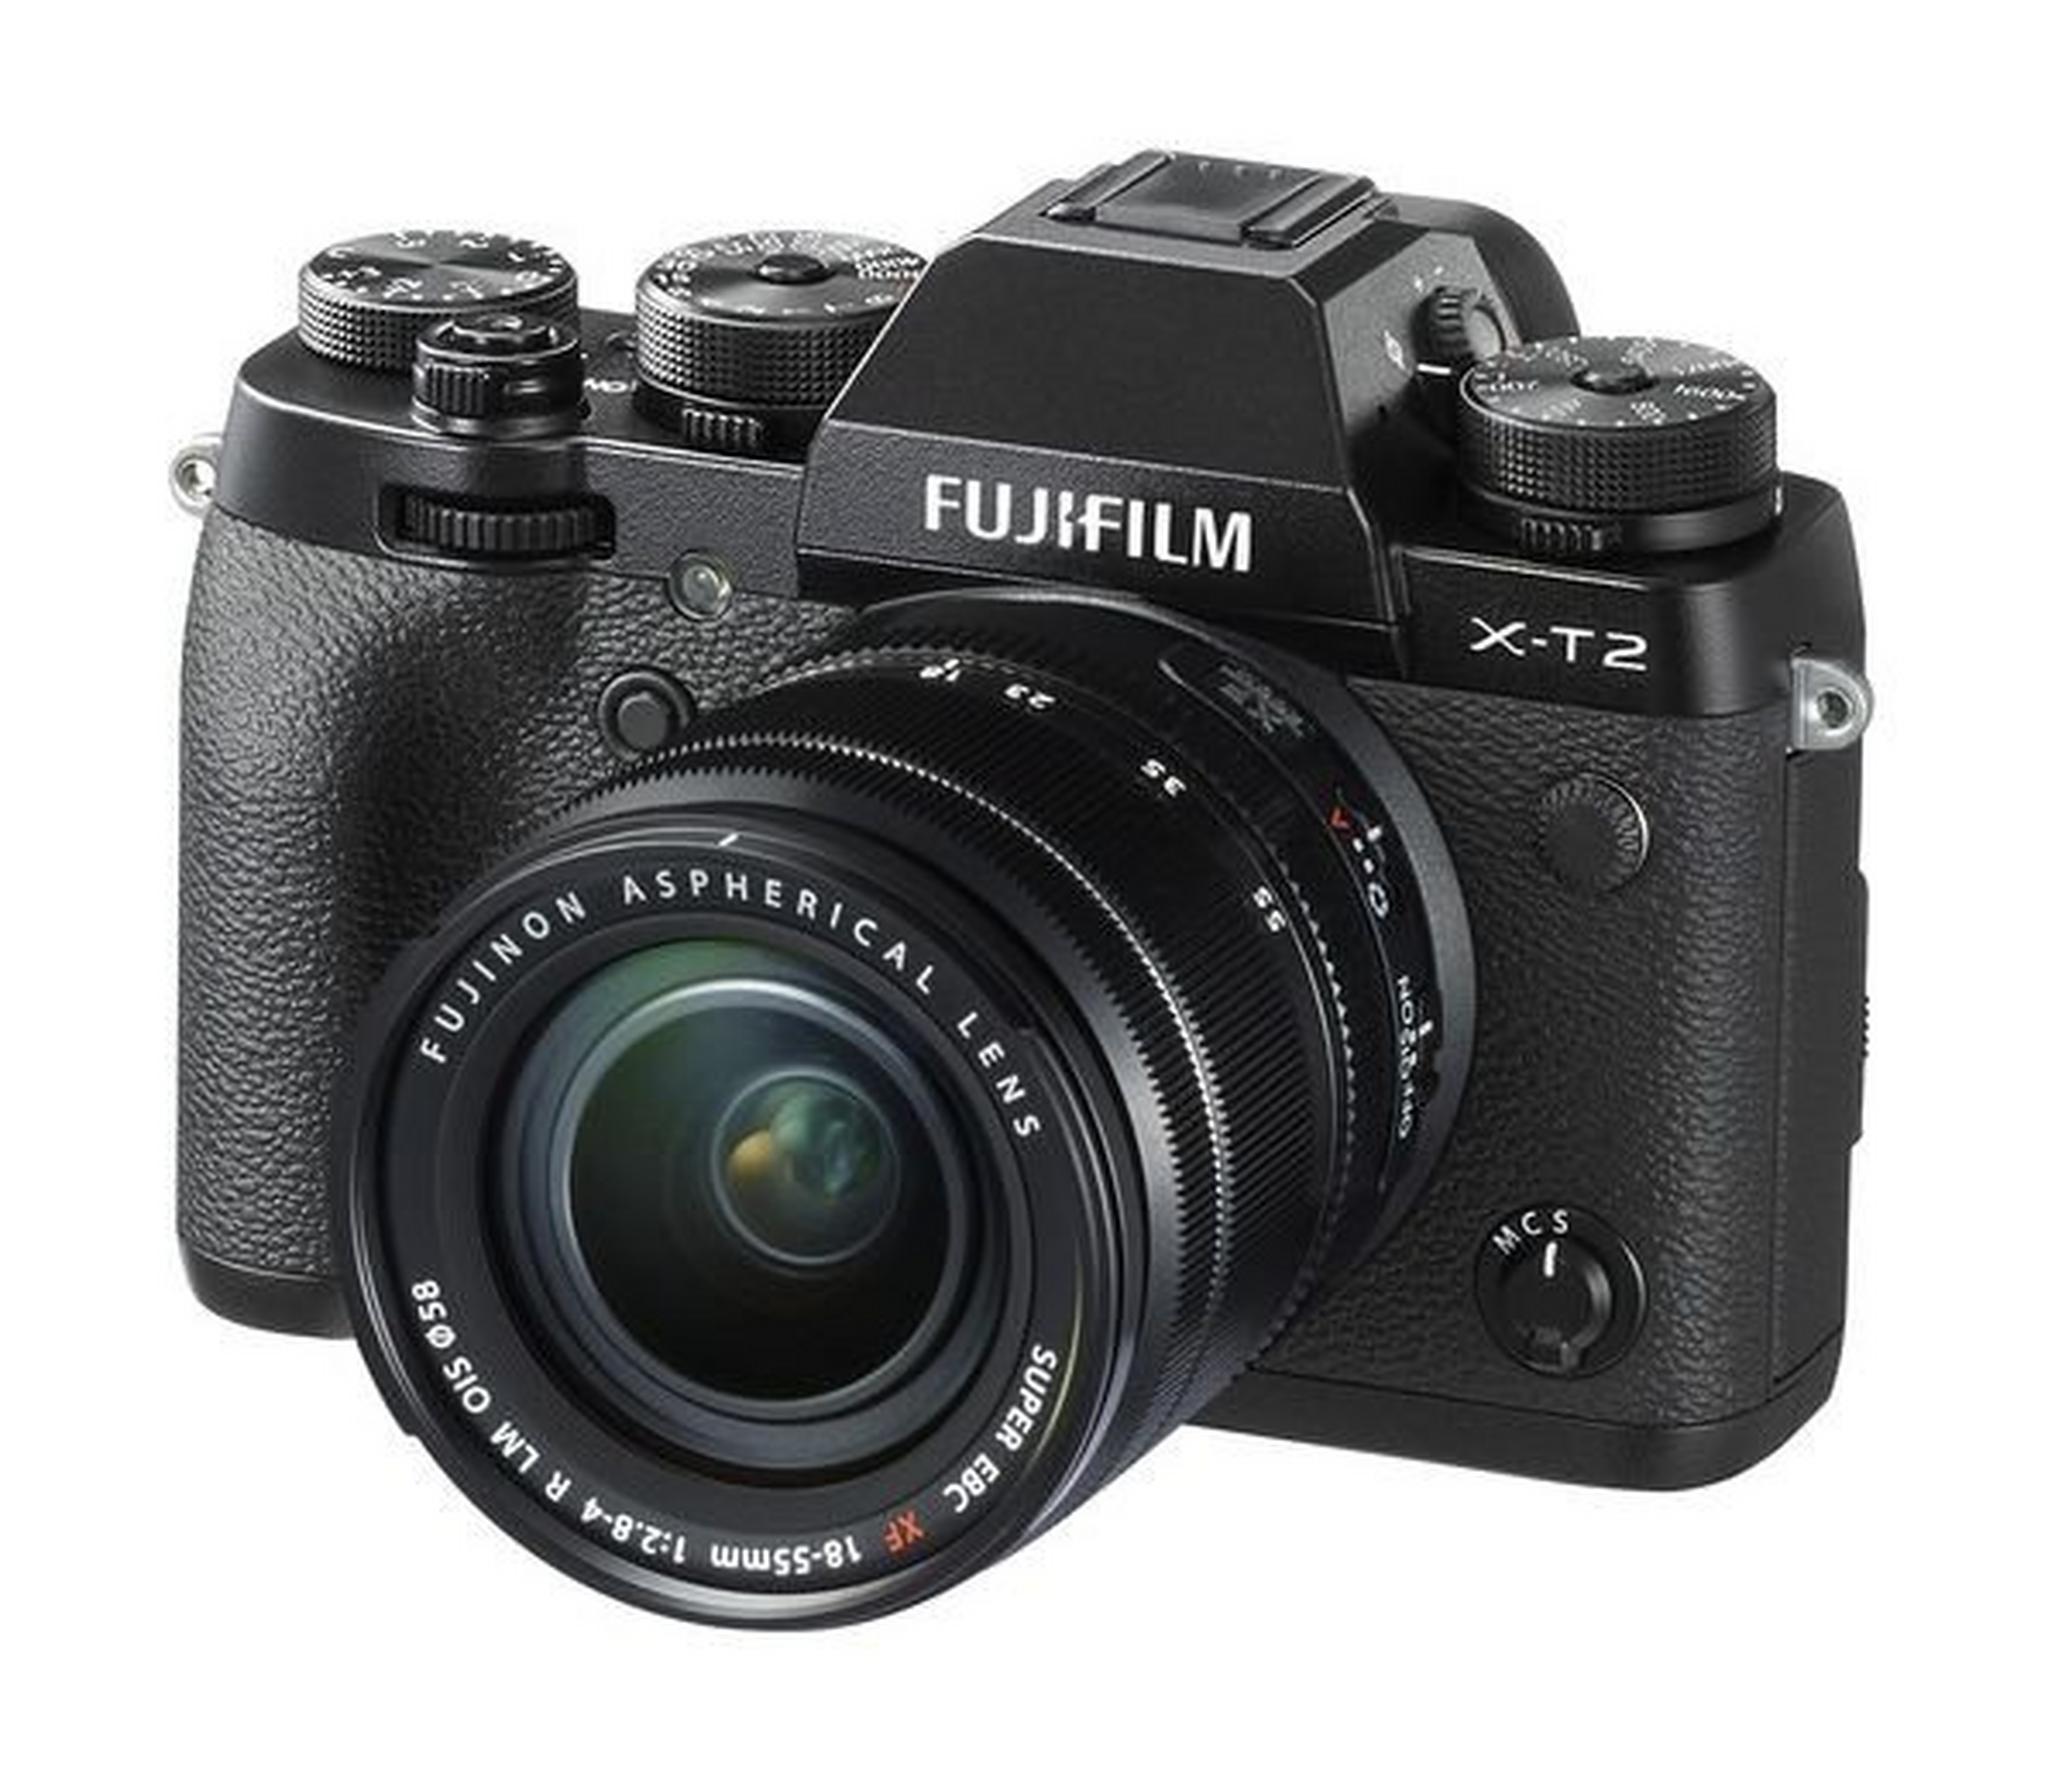 Fujifilm X-T2 Mirrorless Digital Camera with 18-55mm Lens + Fuji LensPen Lens Cleaner